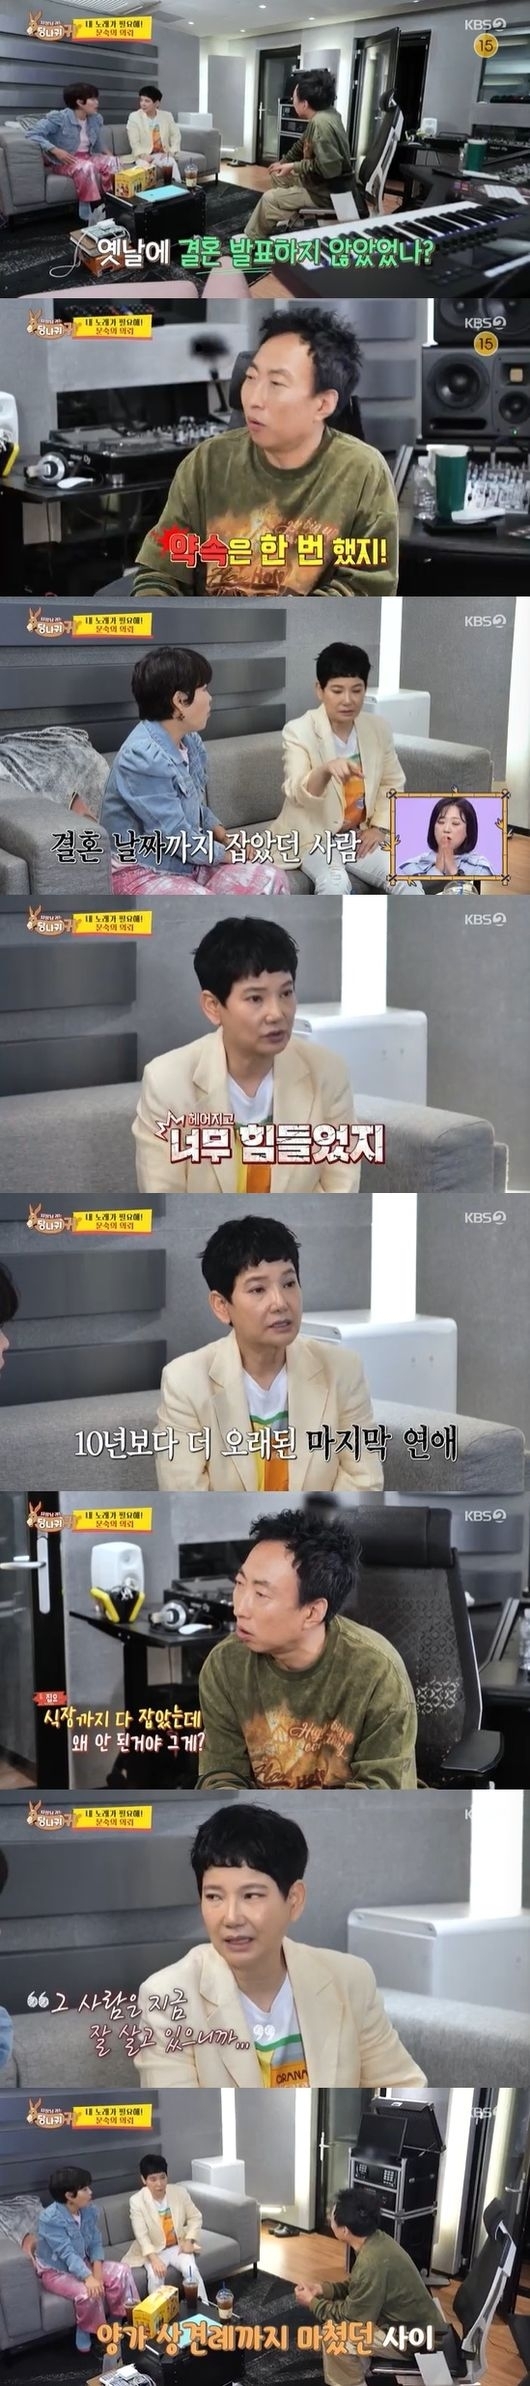 KBS2 예능 ‘사장님 귀는 당나귀 귀’ 캡처